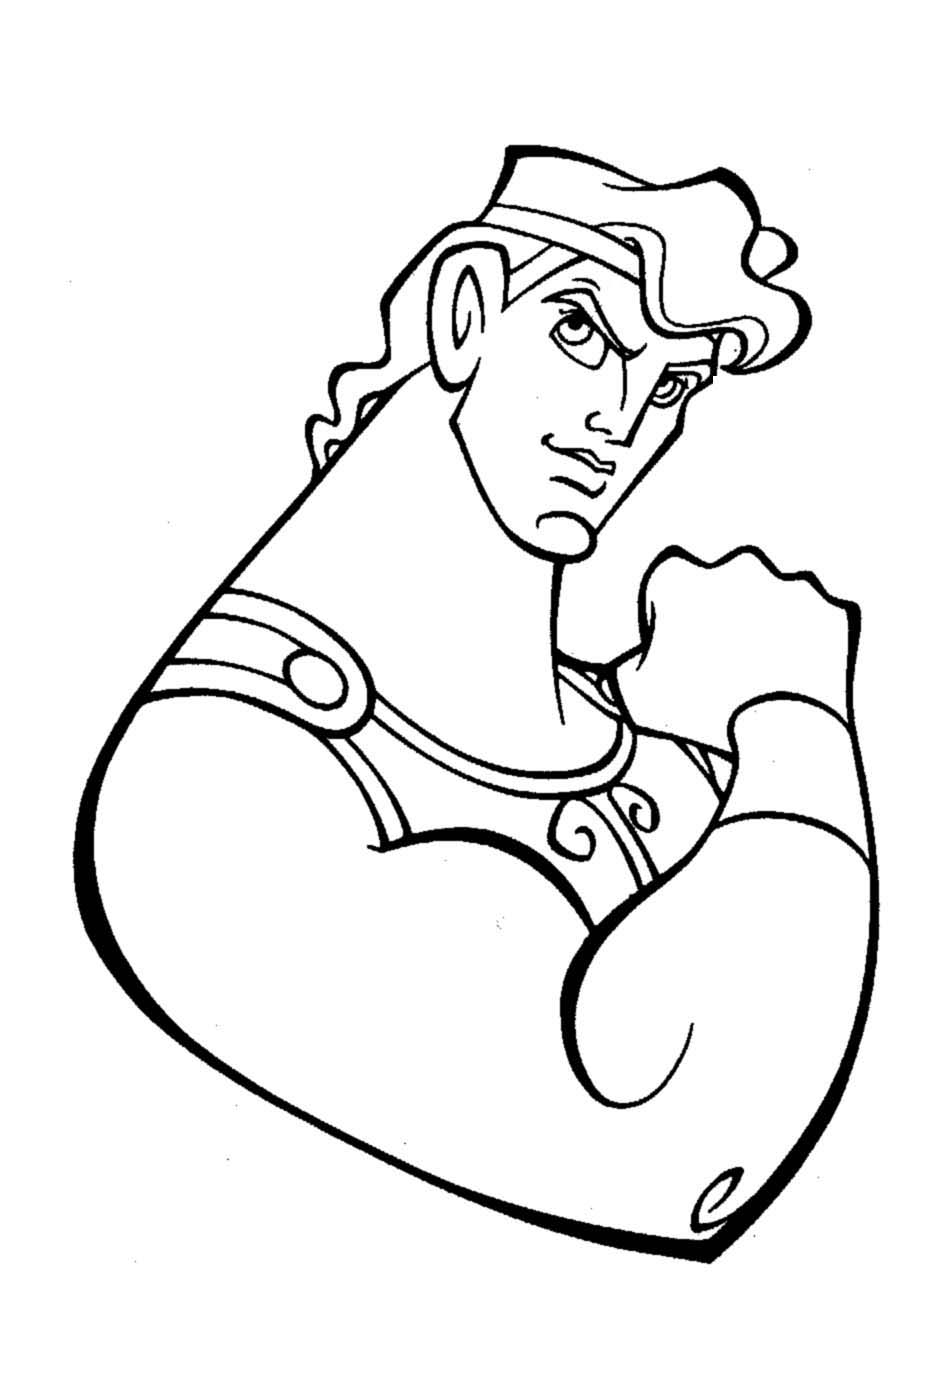 Coloração de Heracles mostrando os seus grandes bíceps!